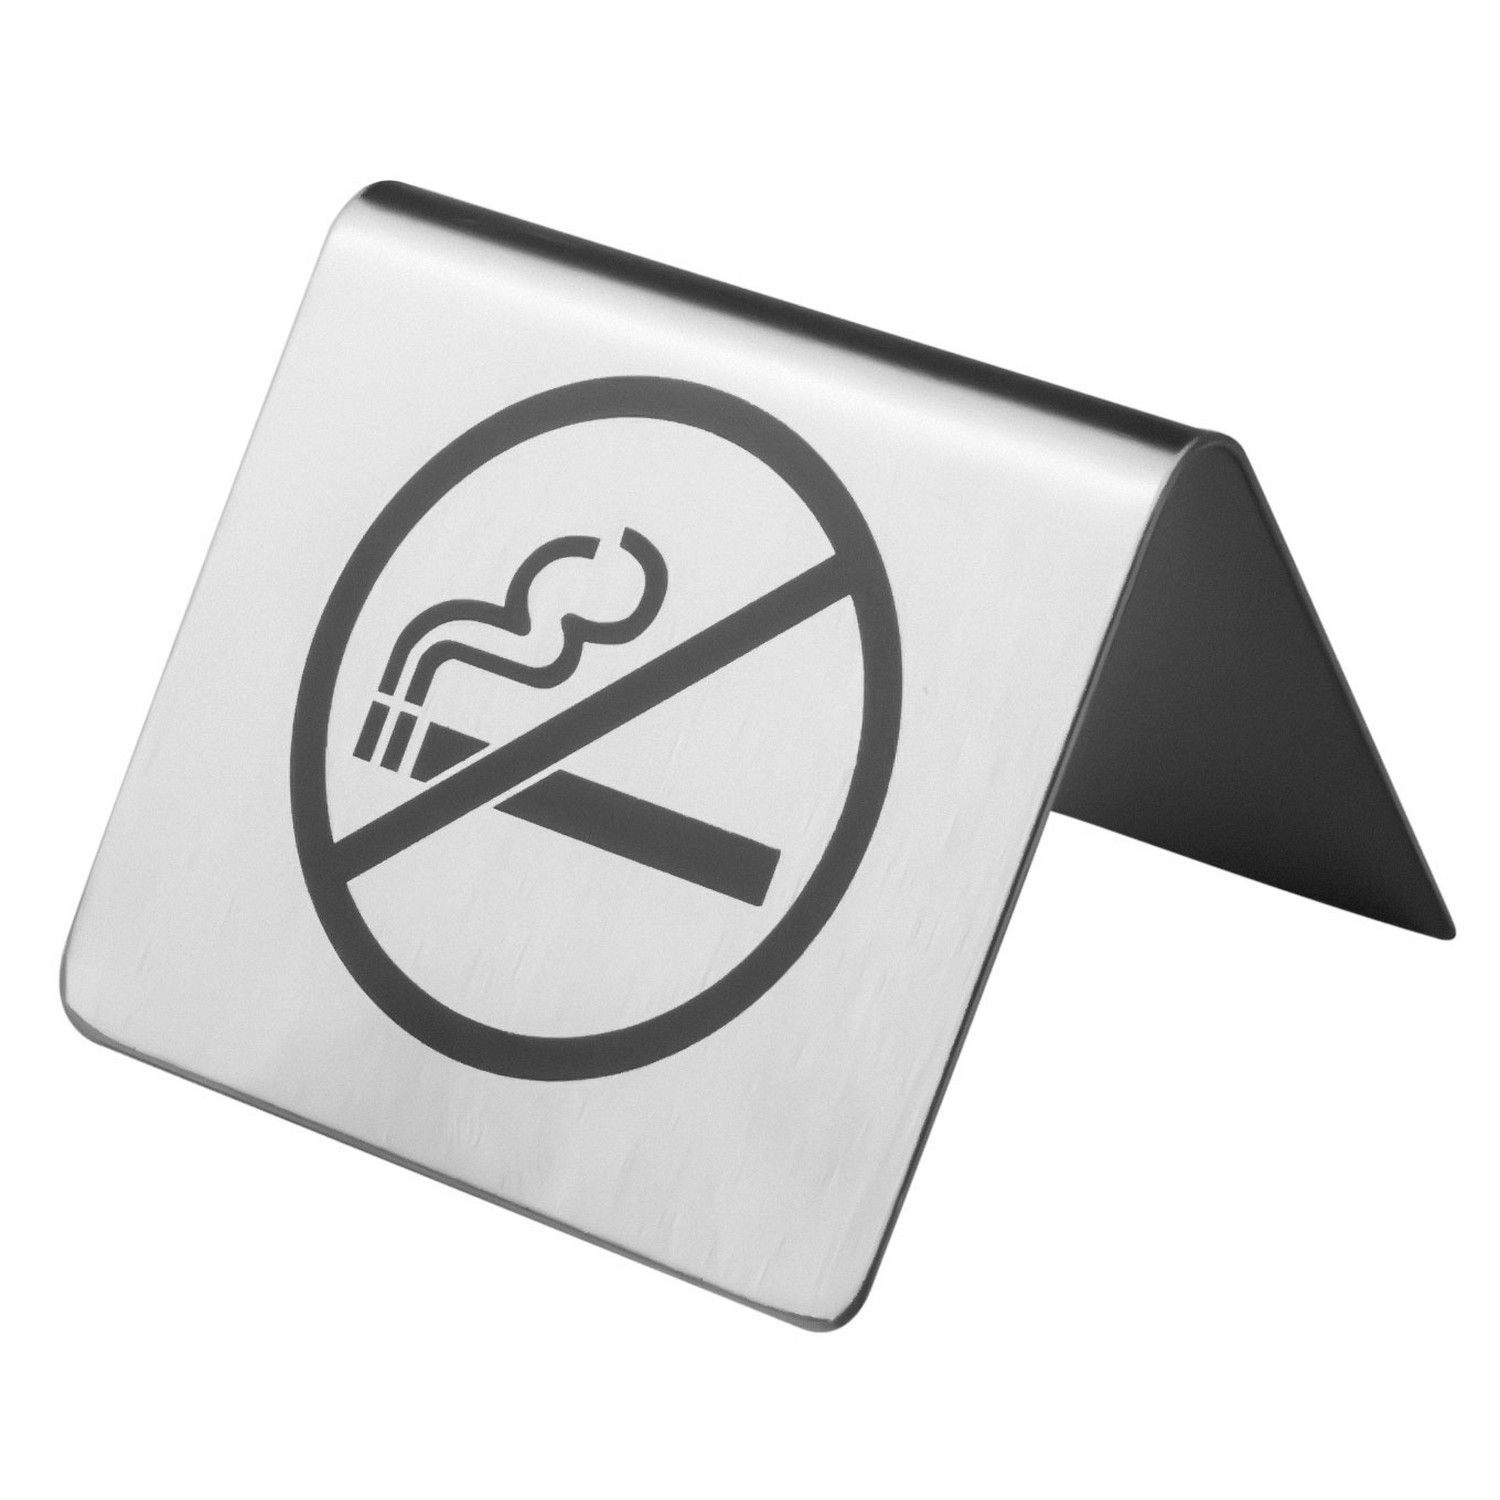 Табличка Prohotel Не курить 60х60х45мм нерж.сталь тренажер для обучения чтению